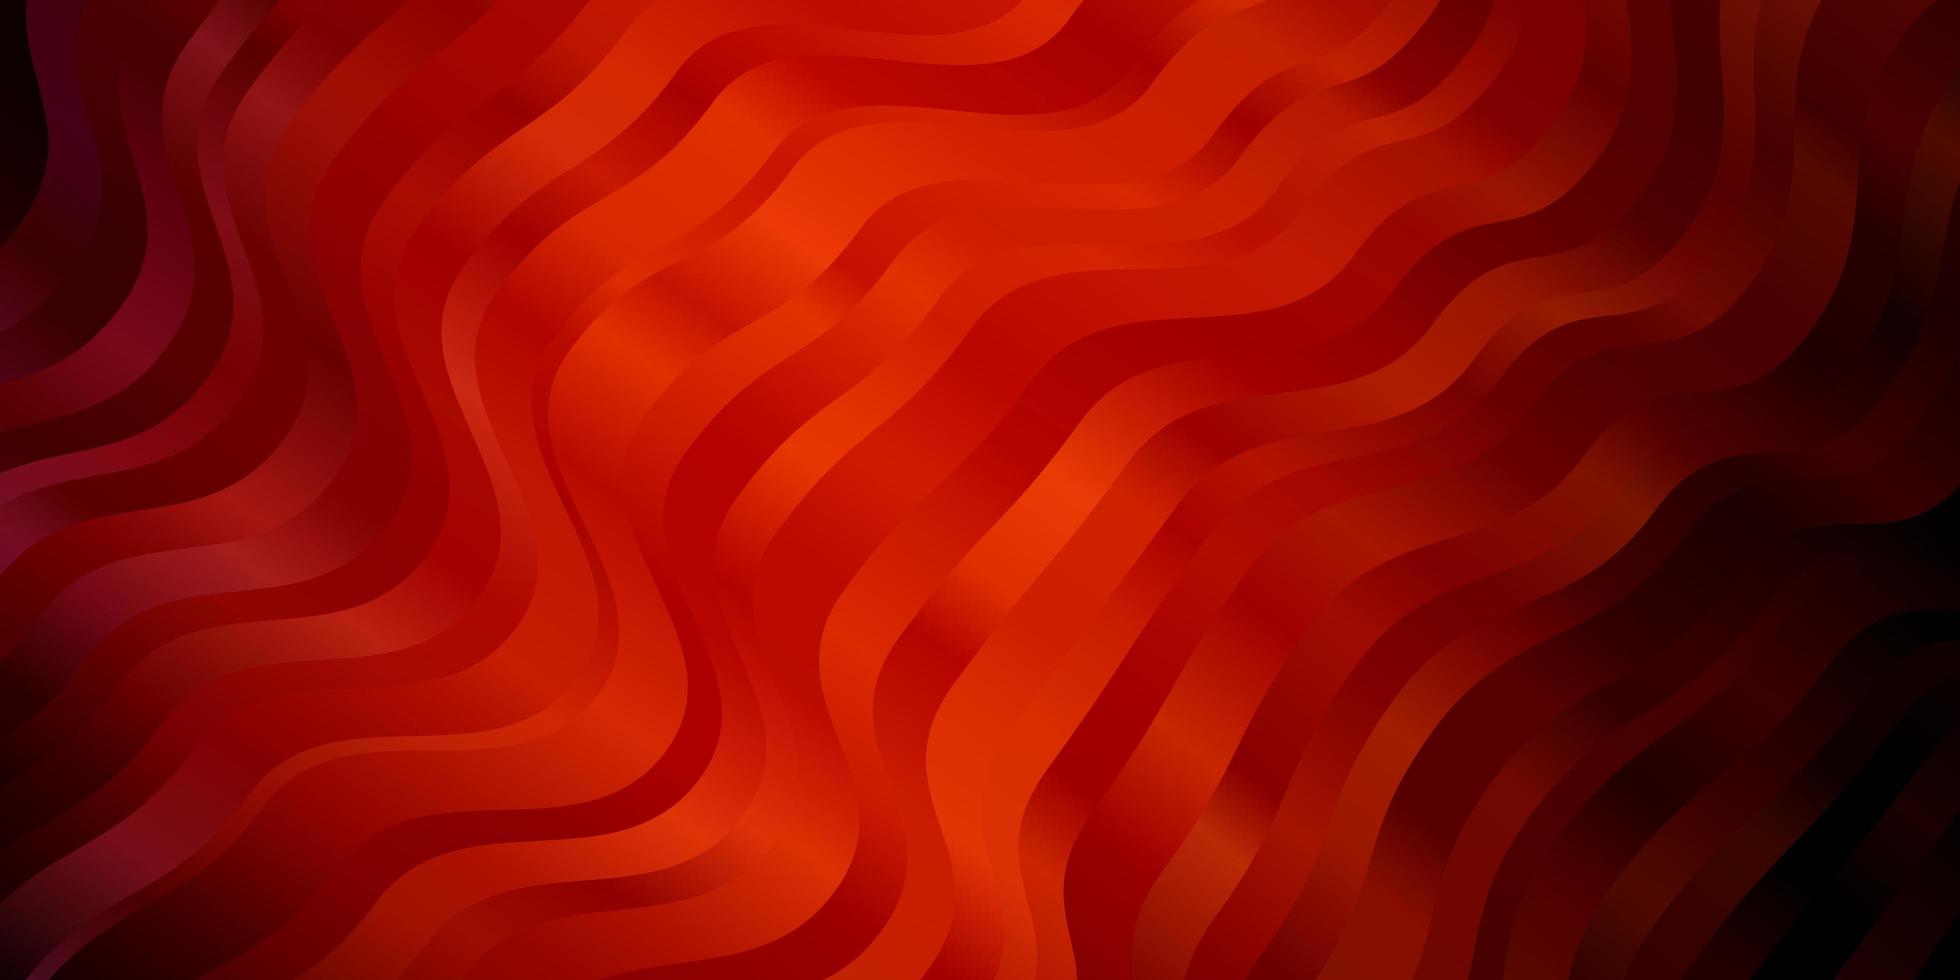 trama vettoriale rosso scuro con curve